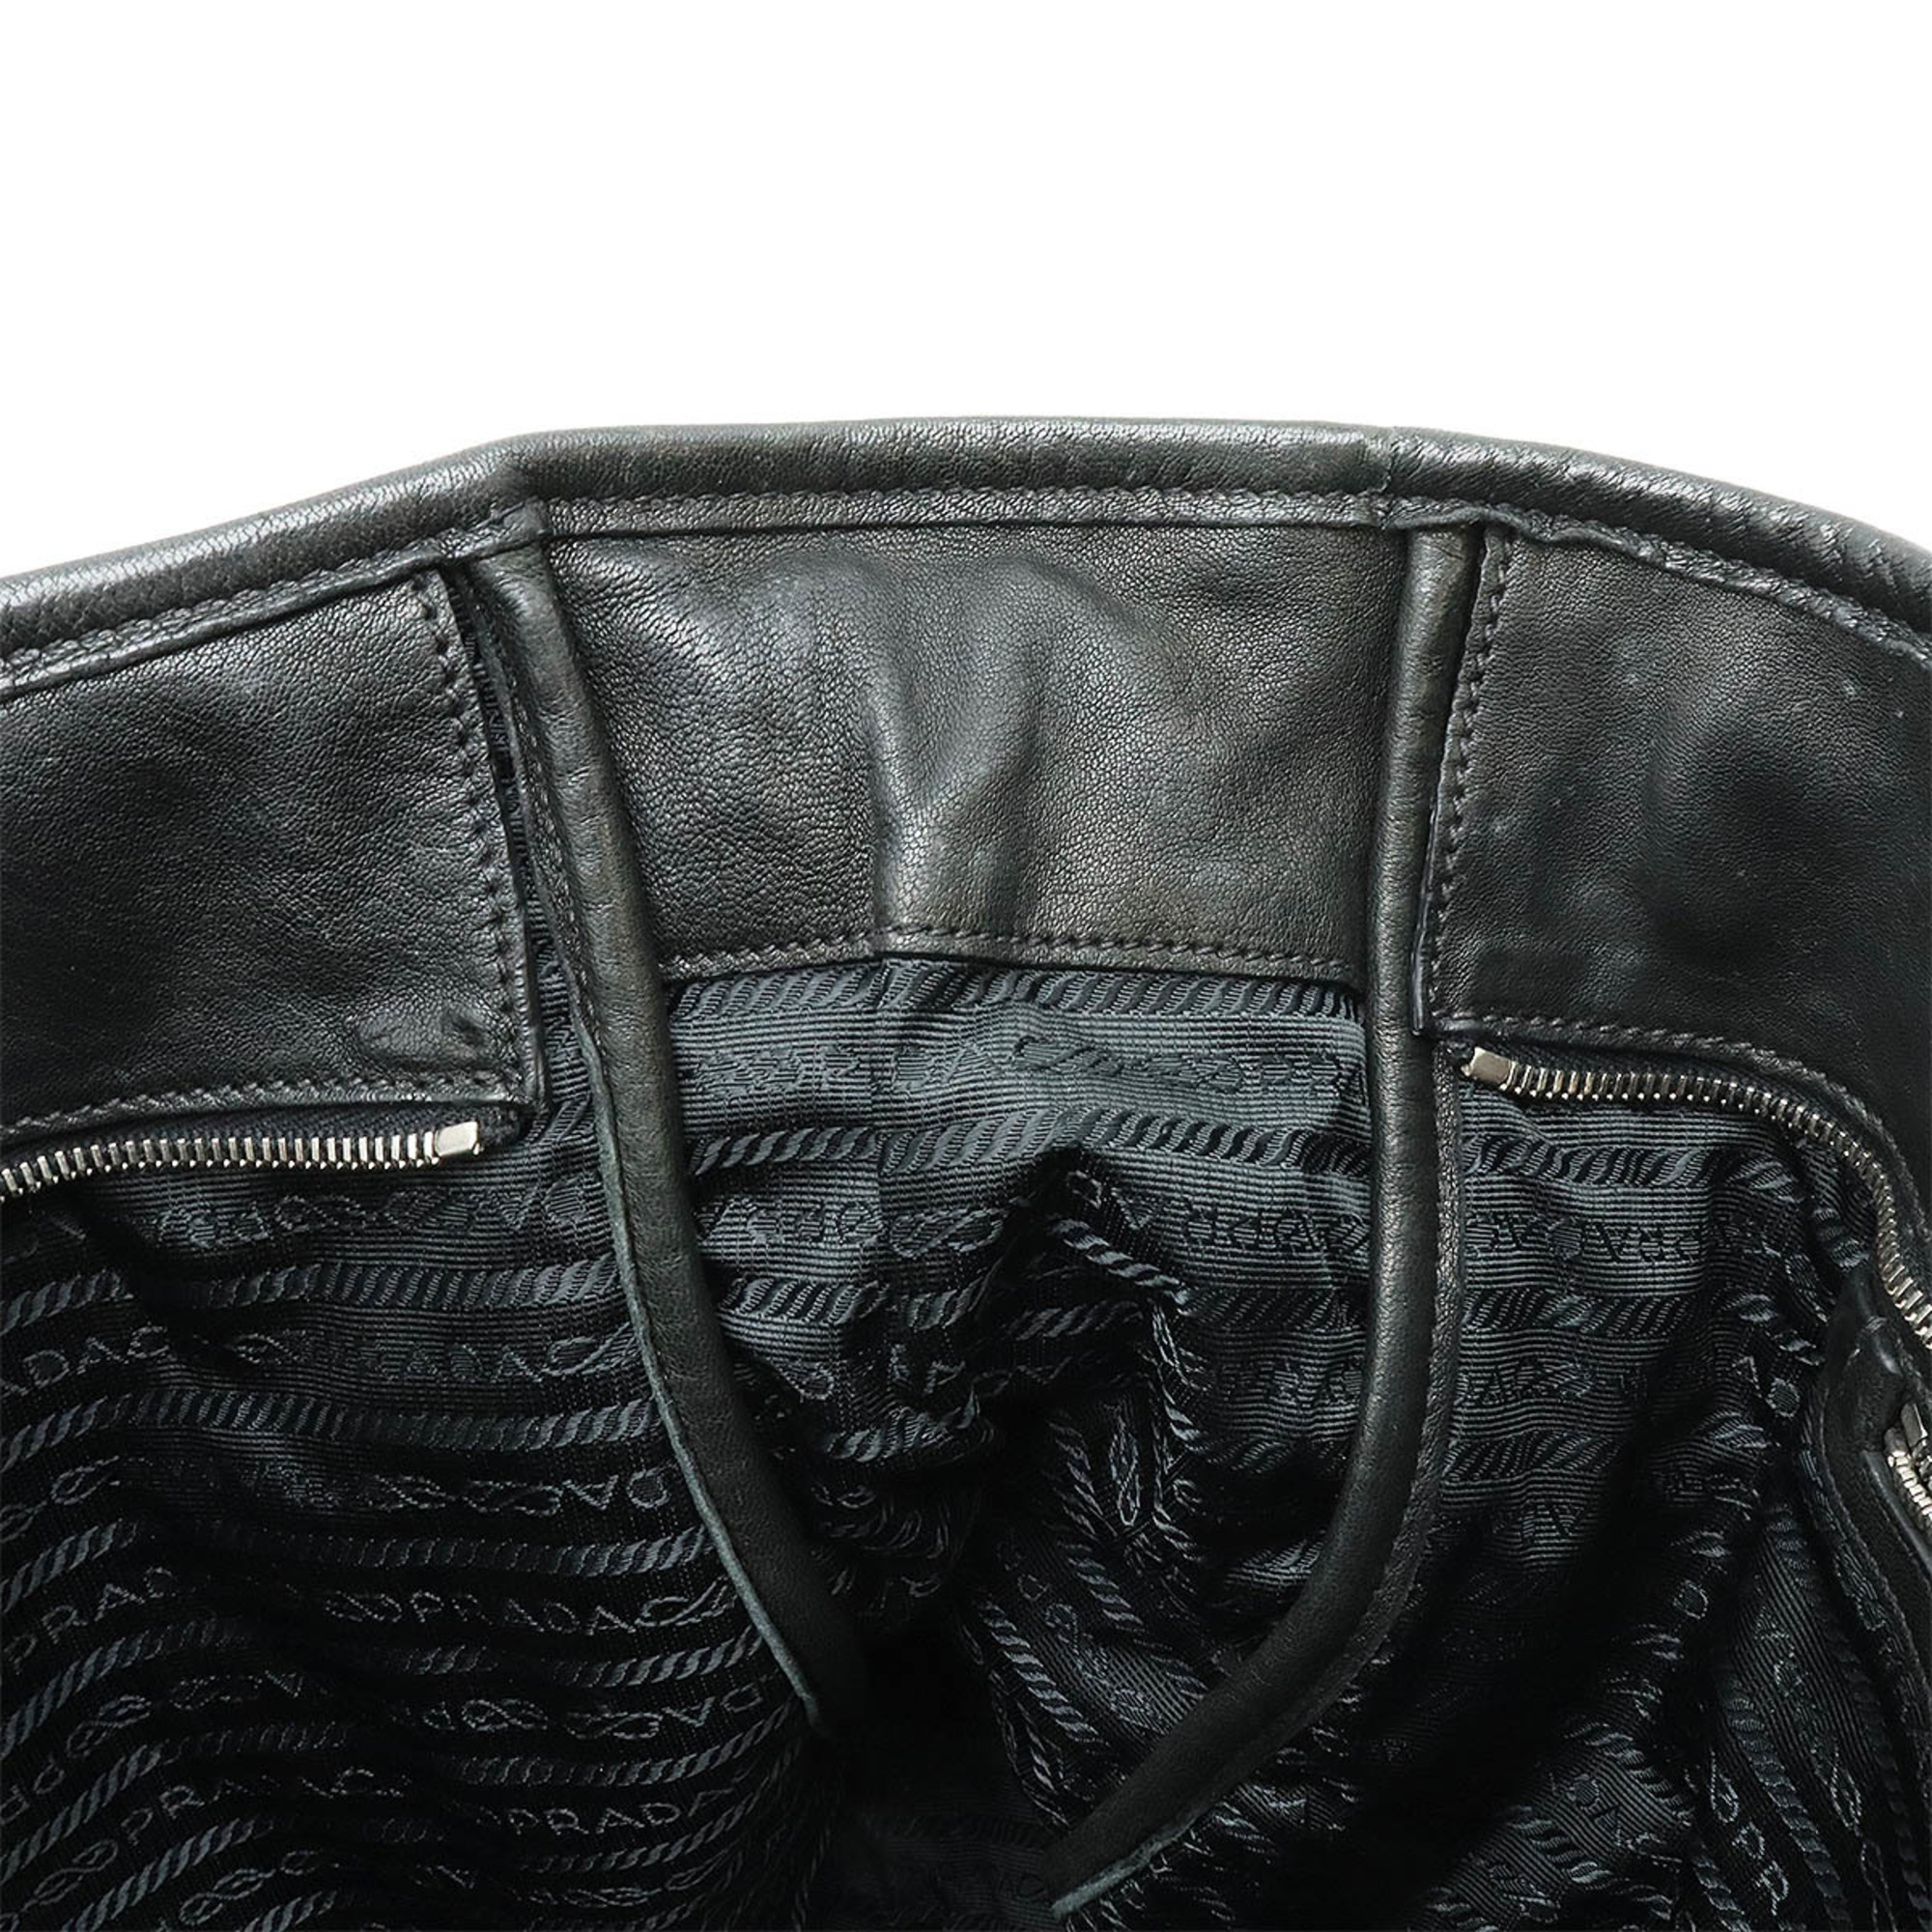 PRADA Prada Tote Bag Large Shoulder Leather NERO Black